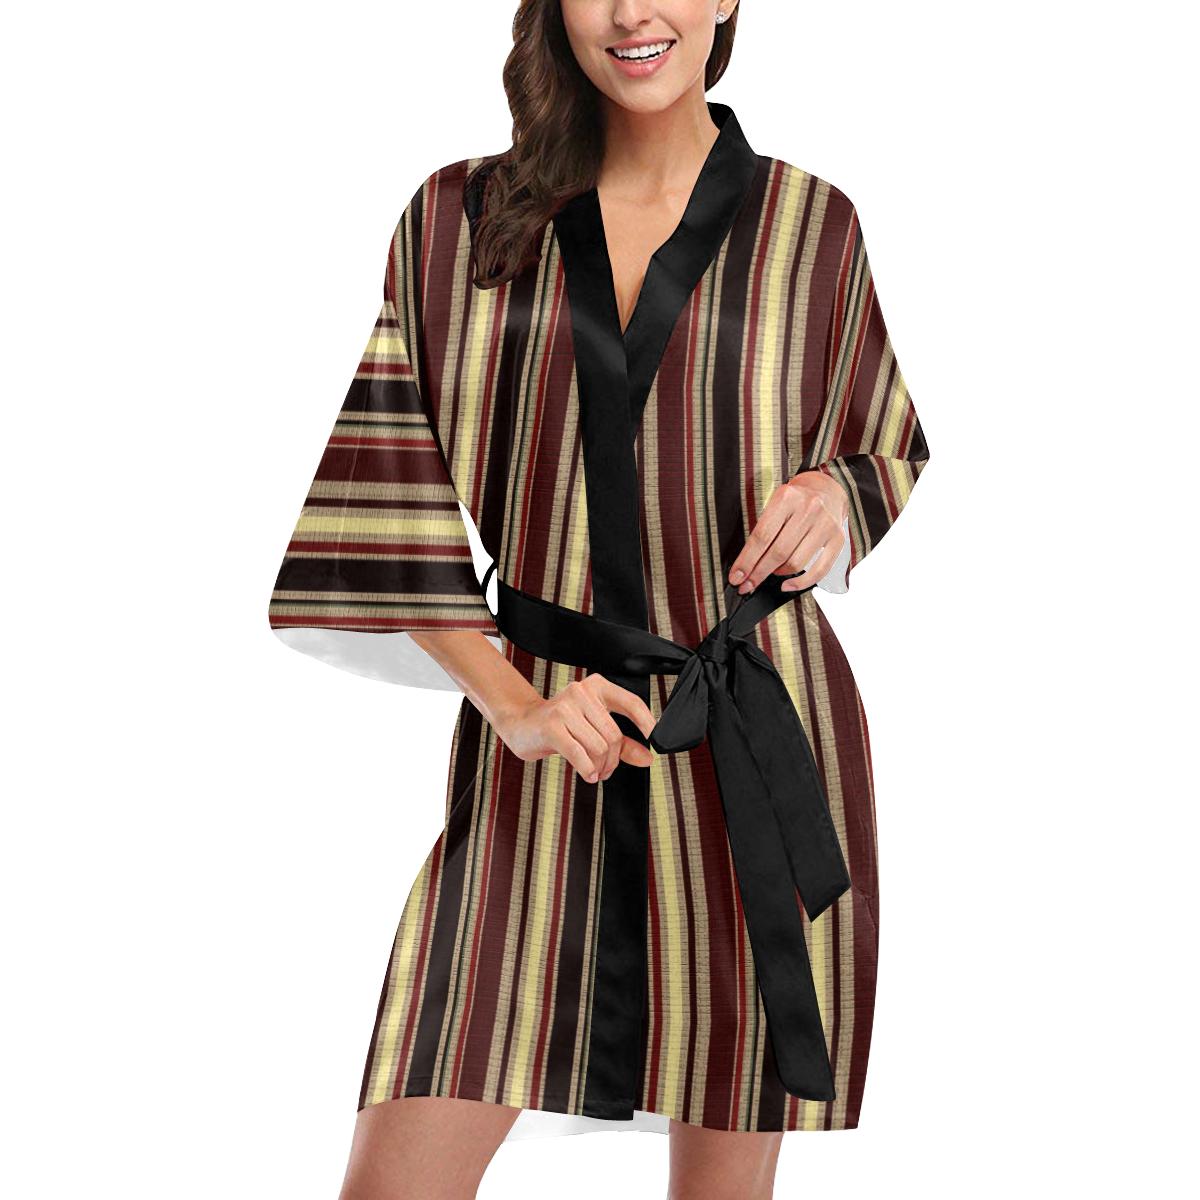 Dark textured stripes Kimono Robe